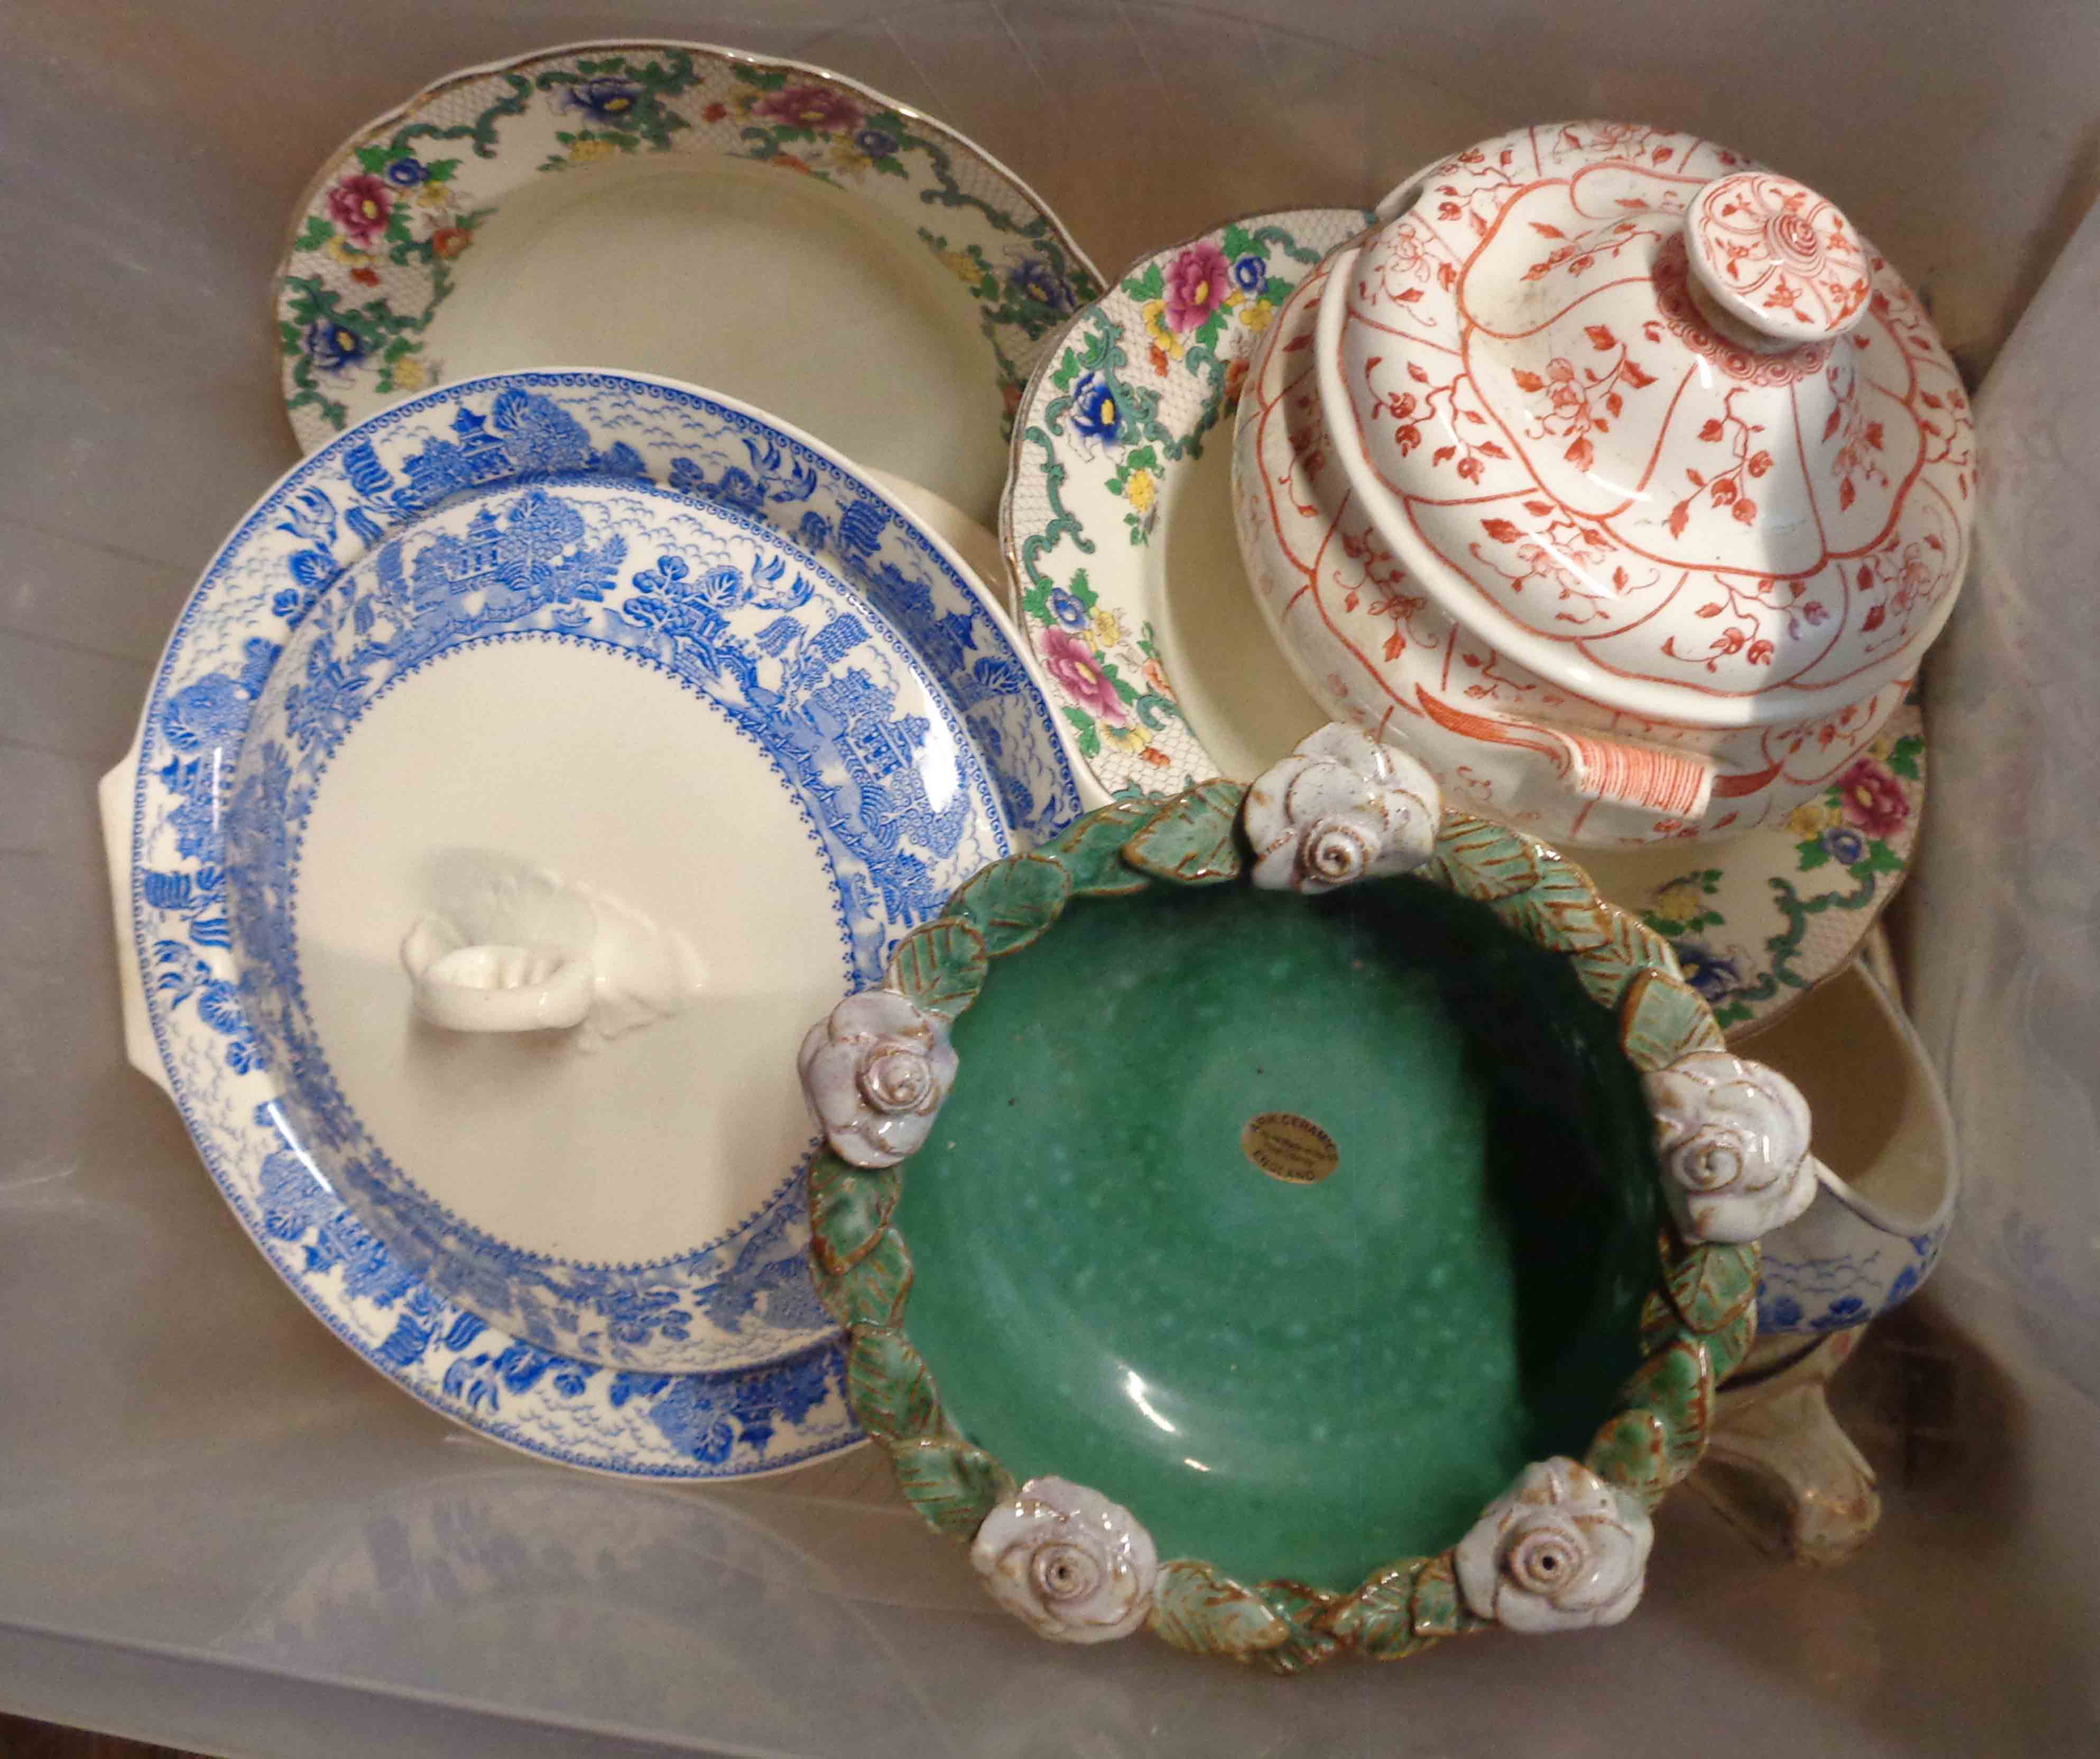 A crate containing a quantity of ceramics including an Ark ceramic bowl, etc.